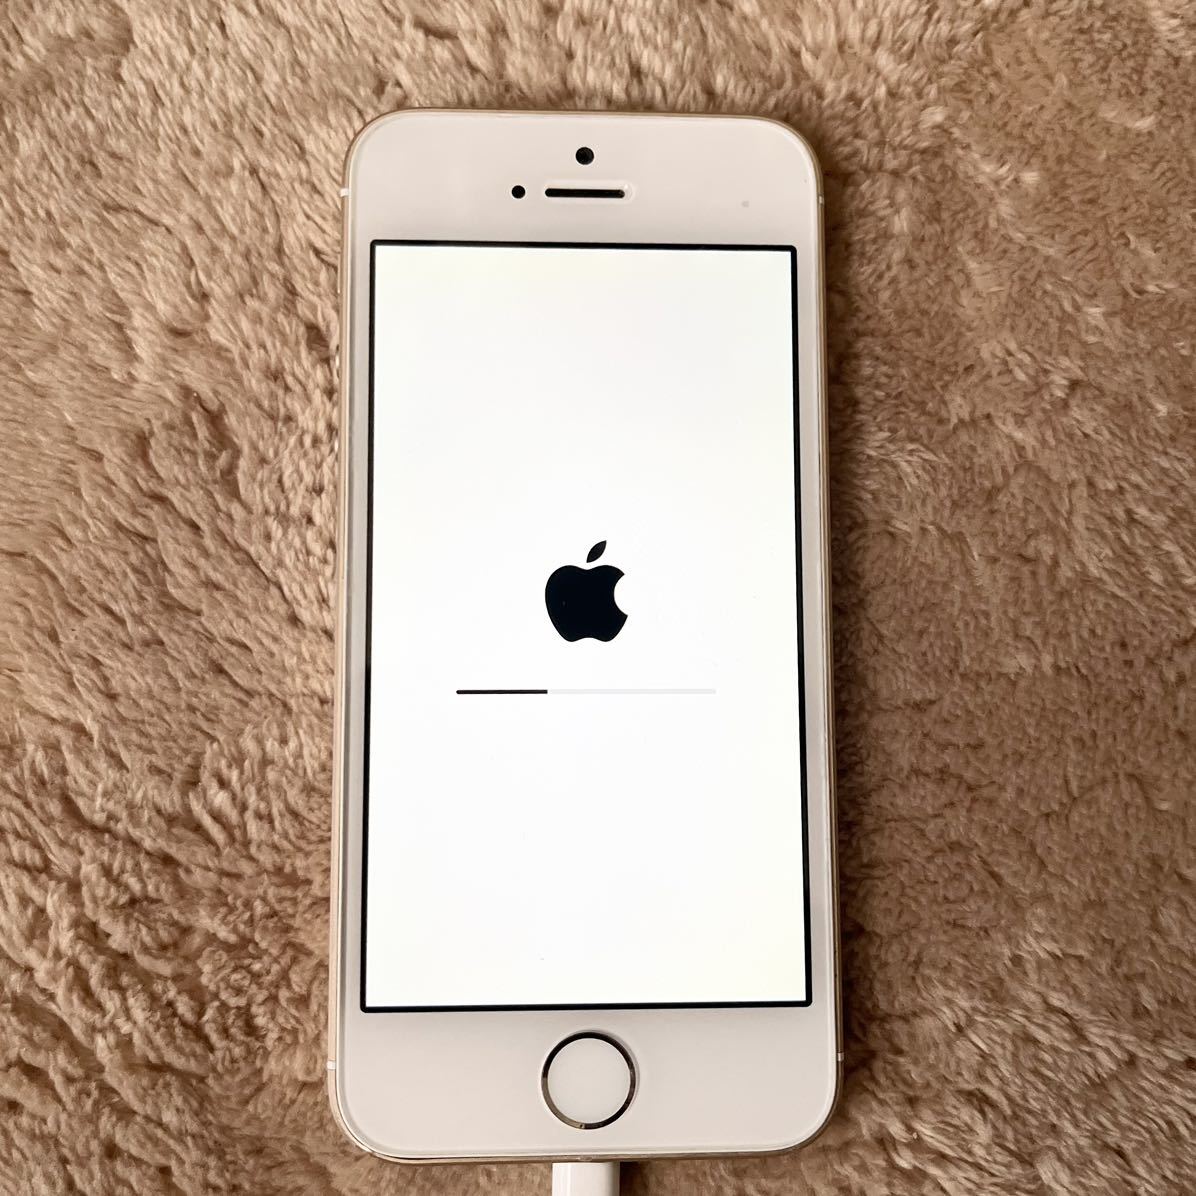 りんごループ★iPhoneSE 初代 32GB ゴールド★ジャンク リンゴループ 故障★本体 4インチ Apple iPhone SE★アクティベーションロック解除_画像6